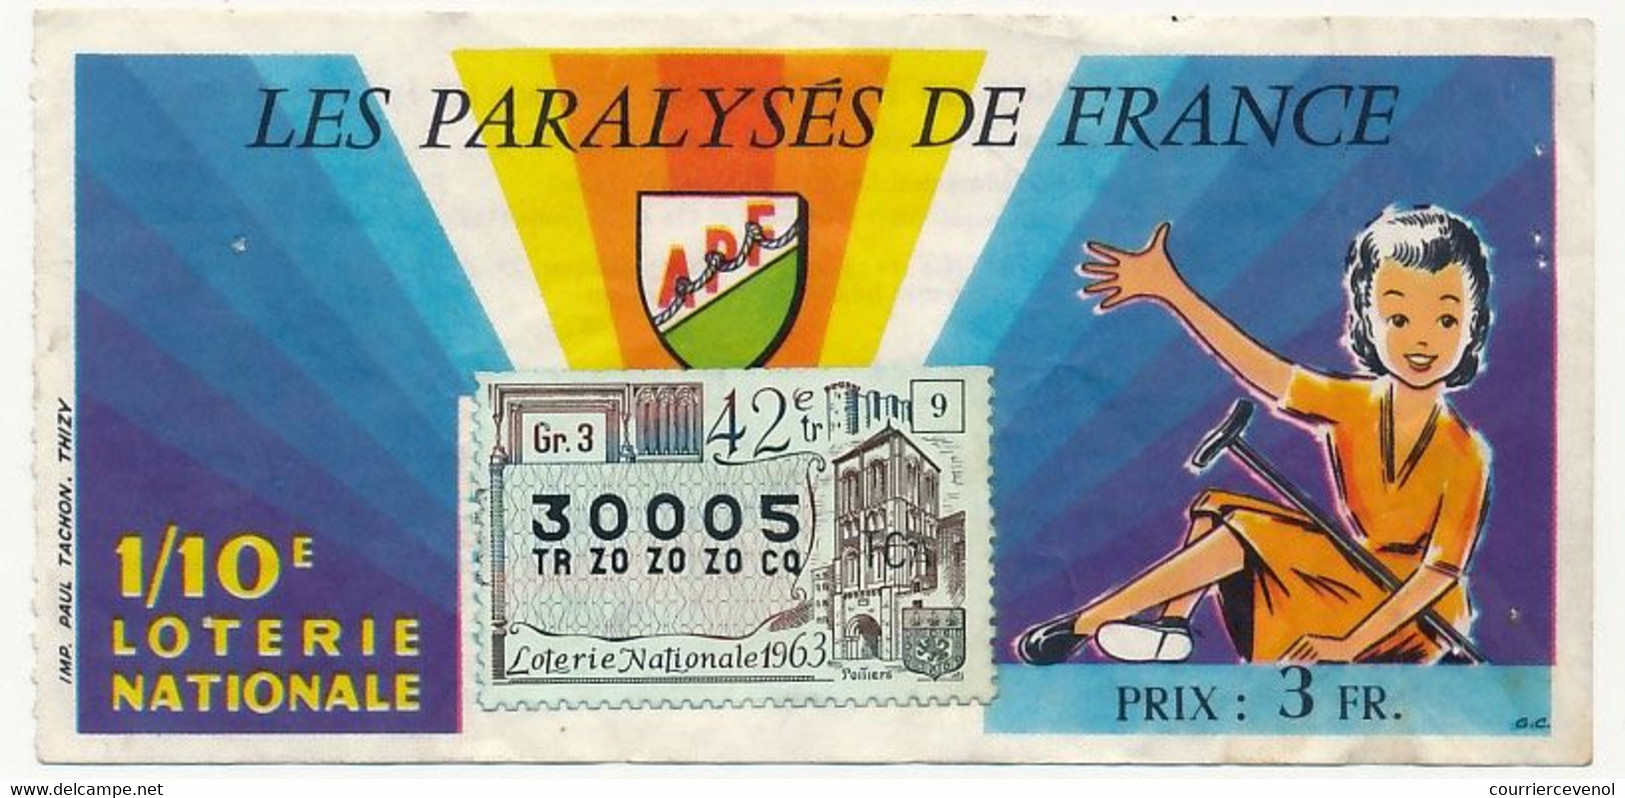 FRANCE - Loterie Nationale - 1/10ème - Les Paralysés De France - 42eme Tranche 1963 - Lottery Tickets